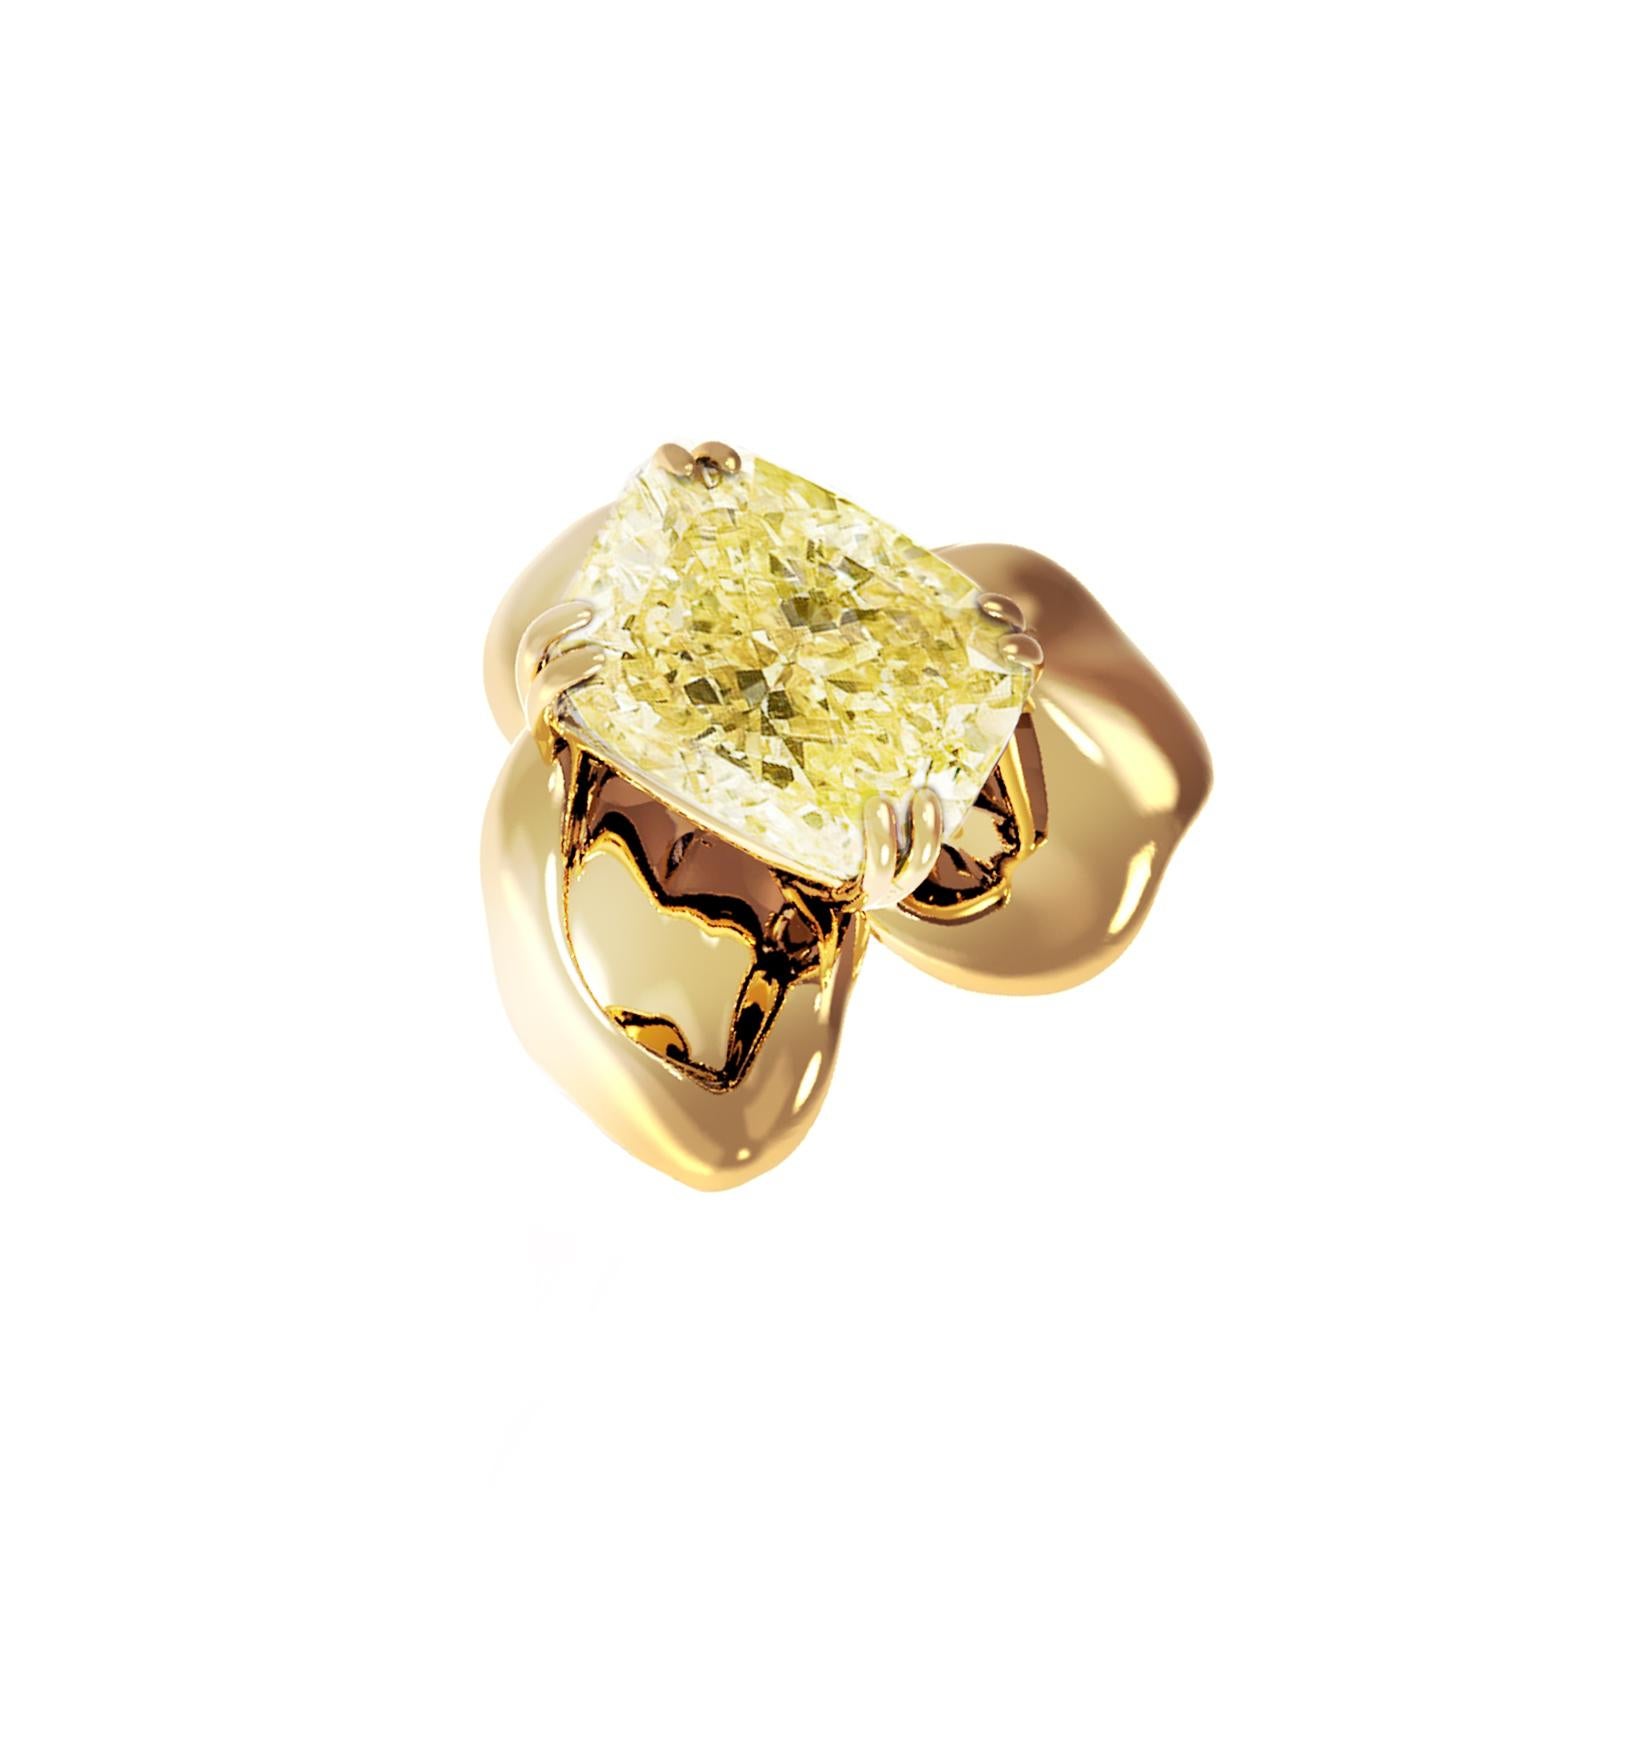 Cushion Cut 18 Karat Gold Clip-On Earrings with 2 Carat GIA Certified Fancy Yellow Diamonds